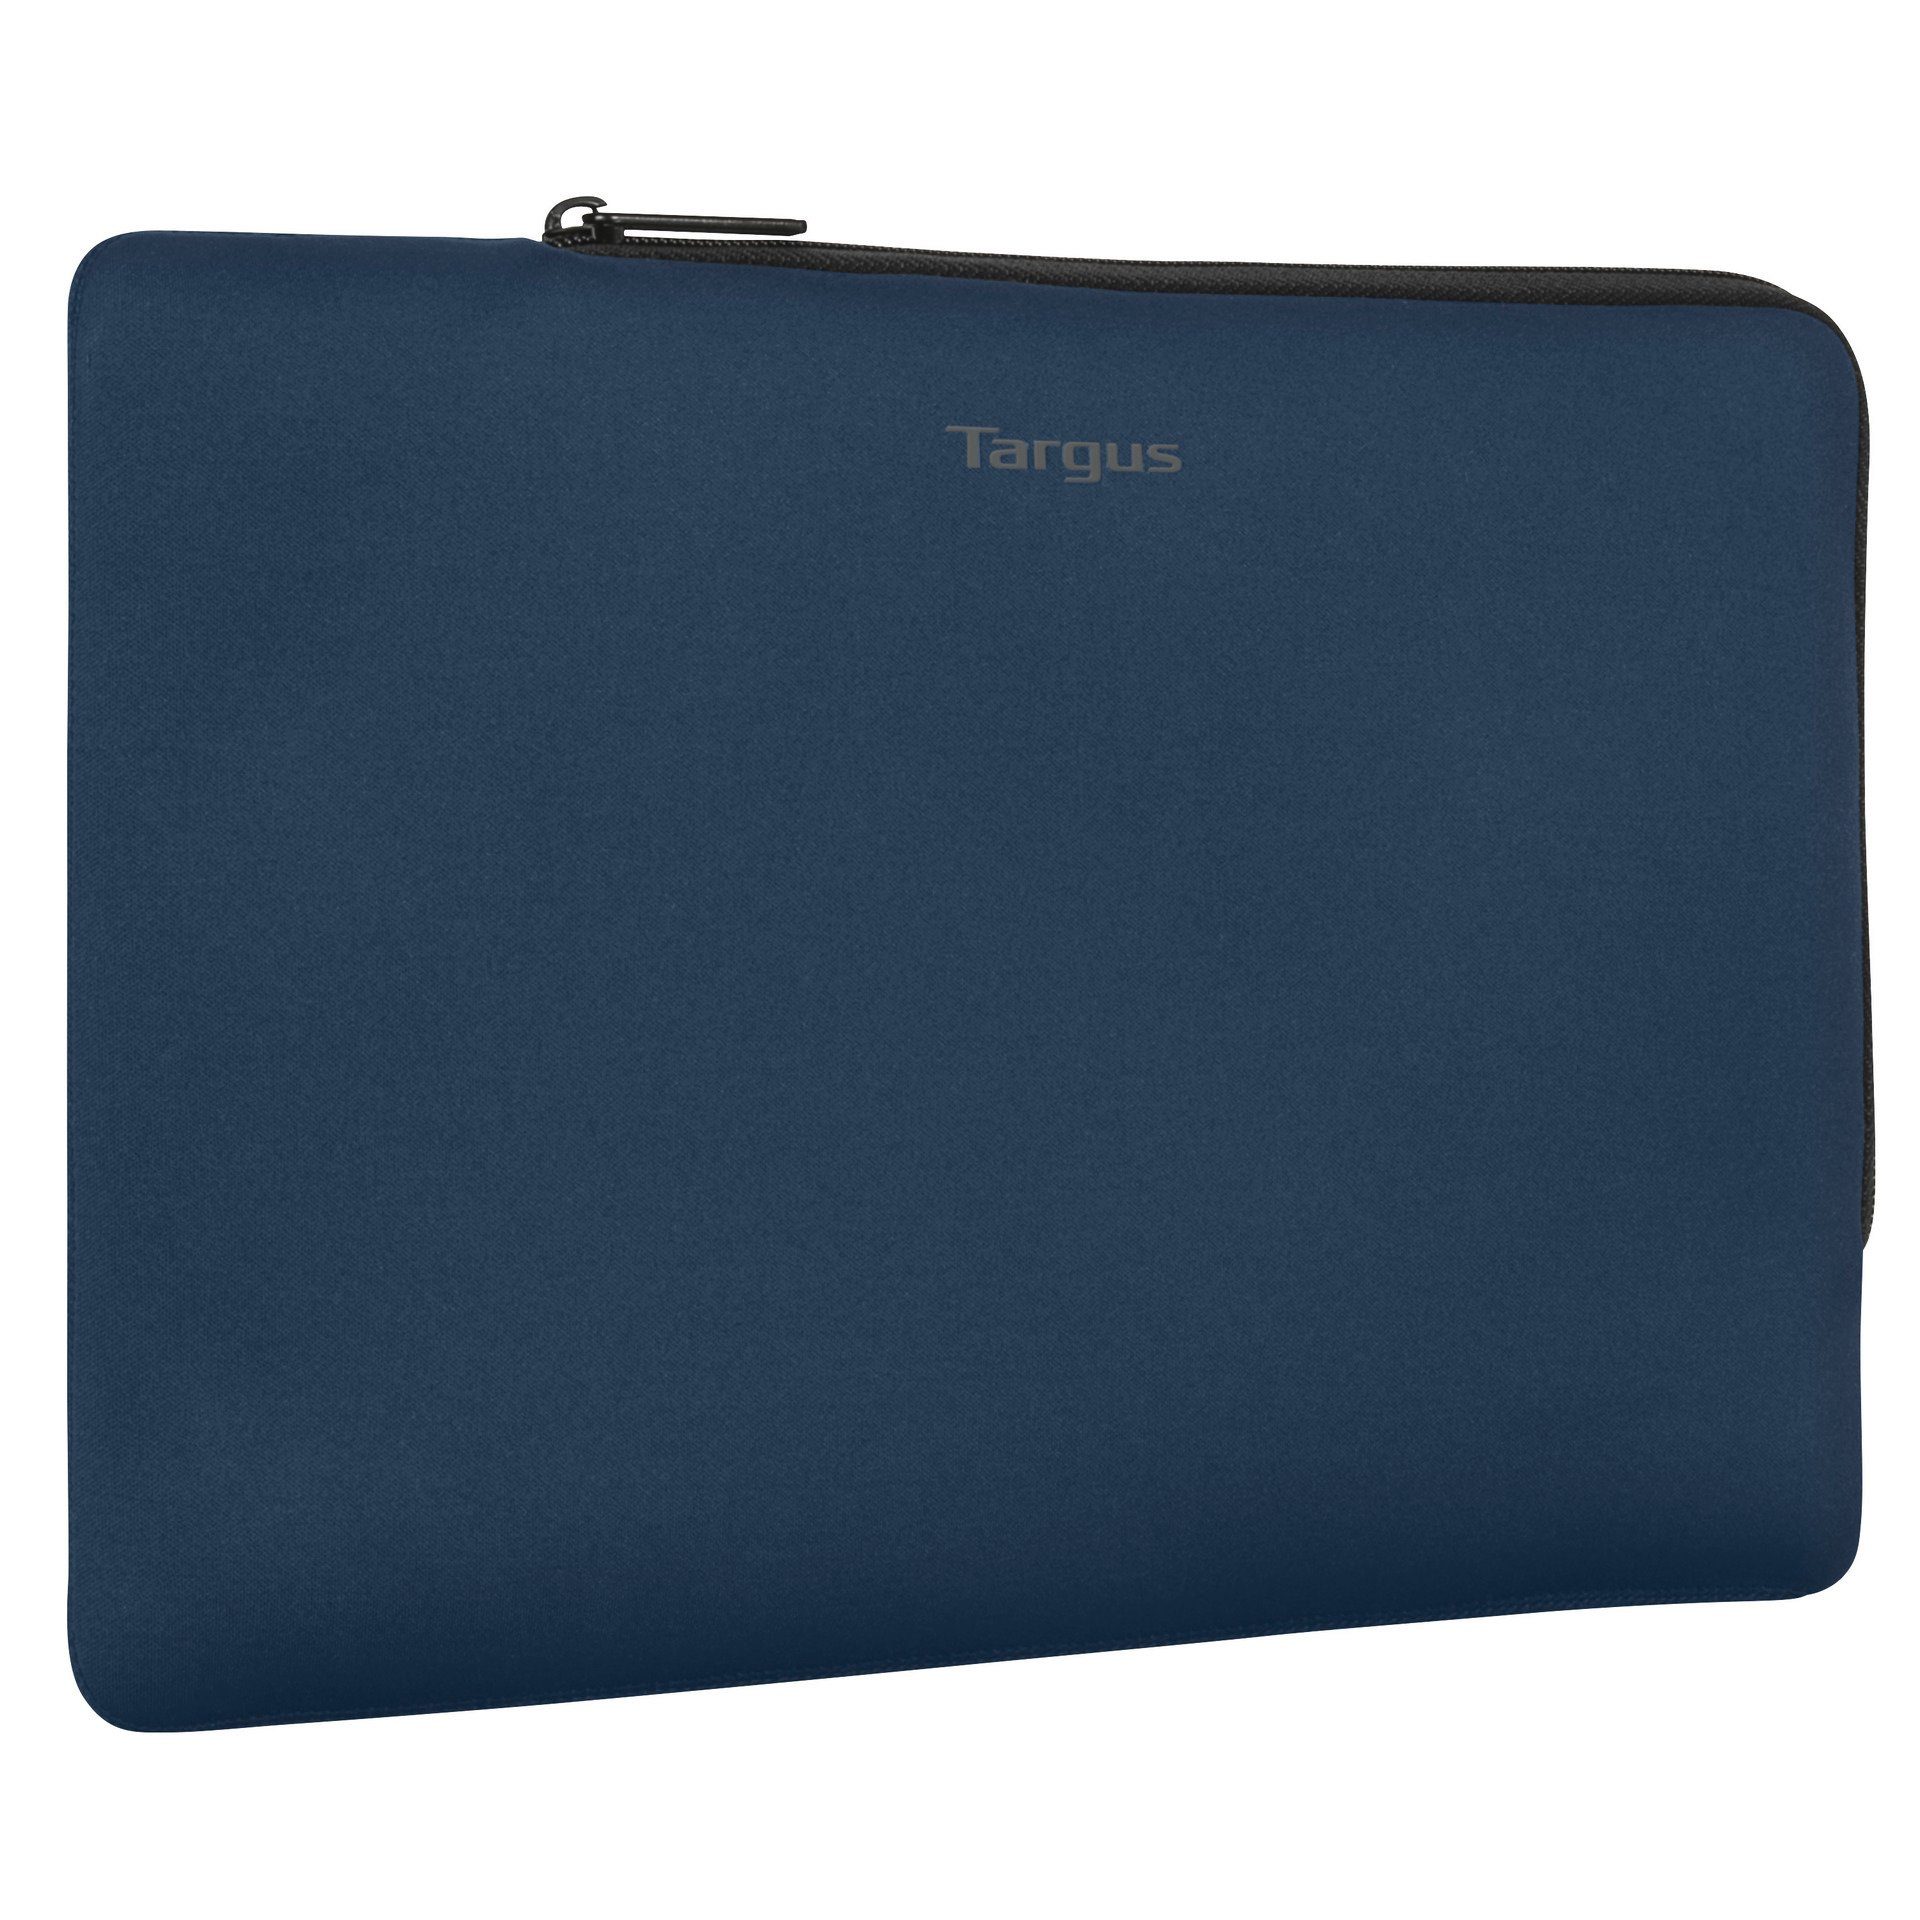 cm Zoll) Laptops sich Das Sleeve, (11-12 formschlüssige passt an Multi-Fit Design 11-12 Laptoptasche Targus - an 30,48 27,94 Ecosmart